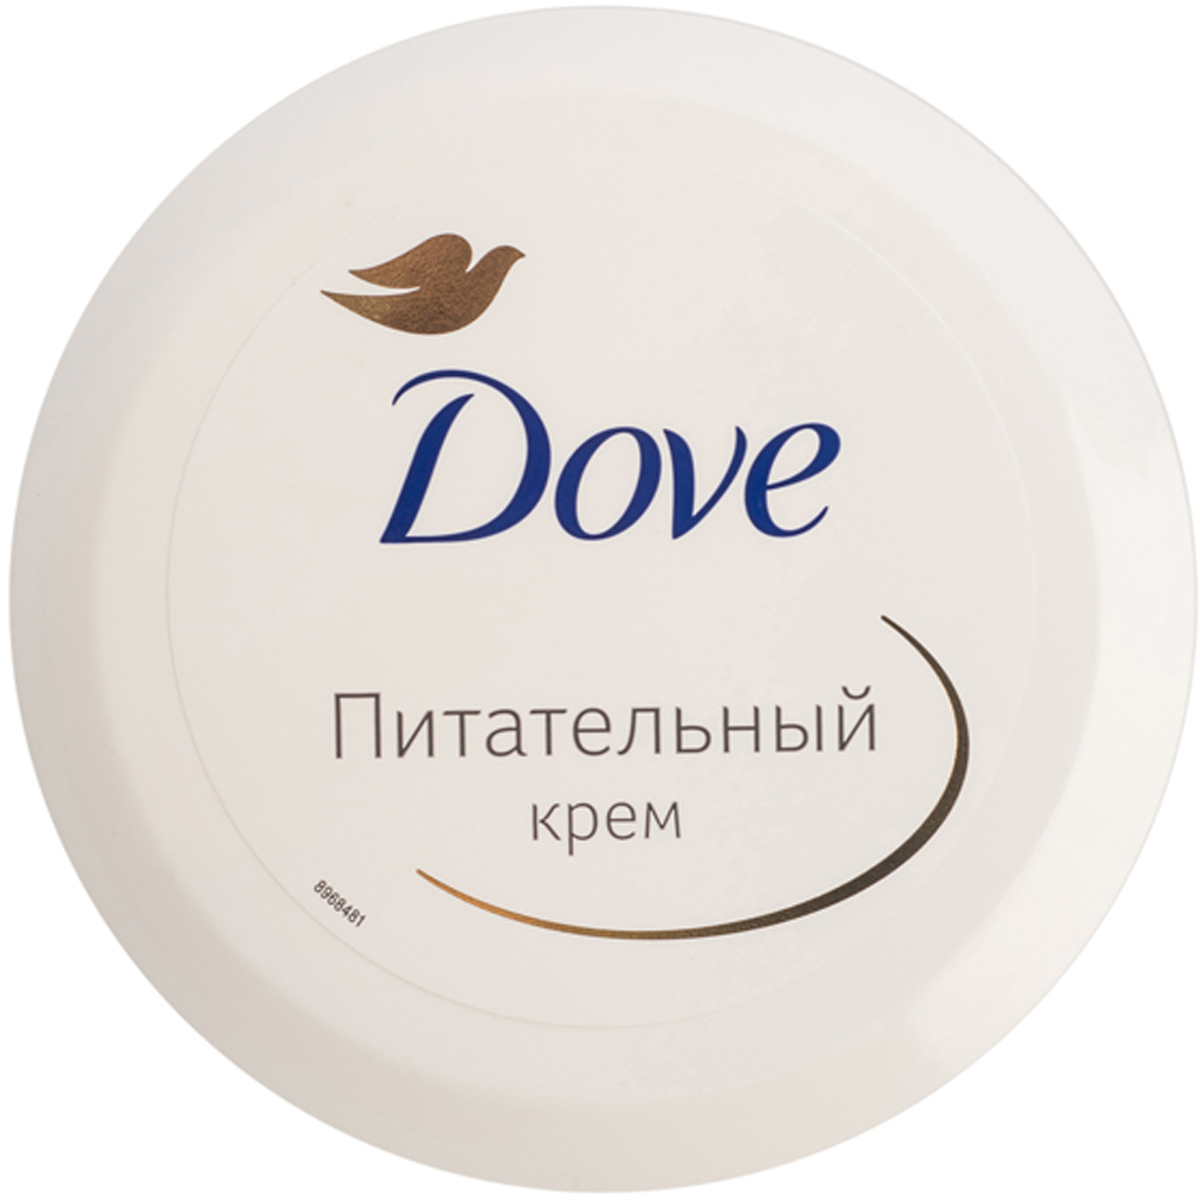 купить Dove Крем для тела Питательный 75 мл - заказ и доставка в Москве и Санкт-Петербурге